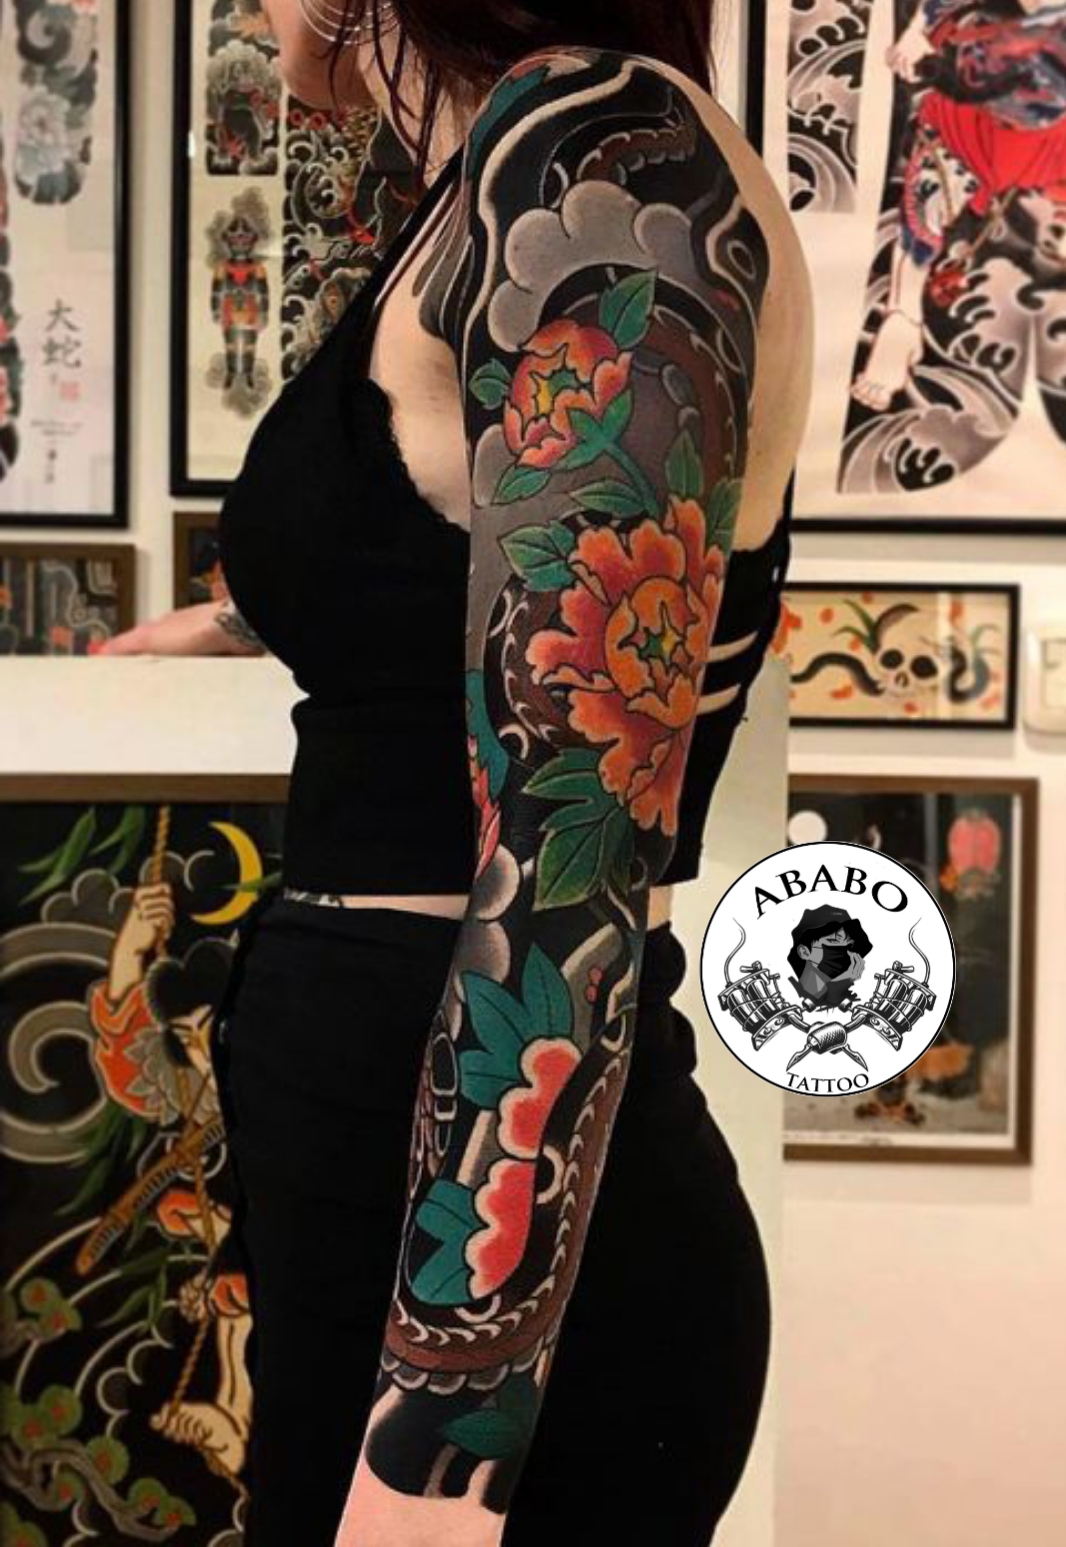 Tattoo hoa mẫu đơn là một hình xăm phổ biến và được yêu thích nhất trên thế giới. Những chi tiết tuyệt đẹp của hoa mẫu đơn được tái hiện trên cơ thể bạn, tạo nên một hình xăm đơn giản nhưng rất ấn tượng và đẹp mắt.